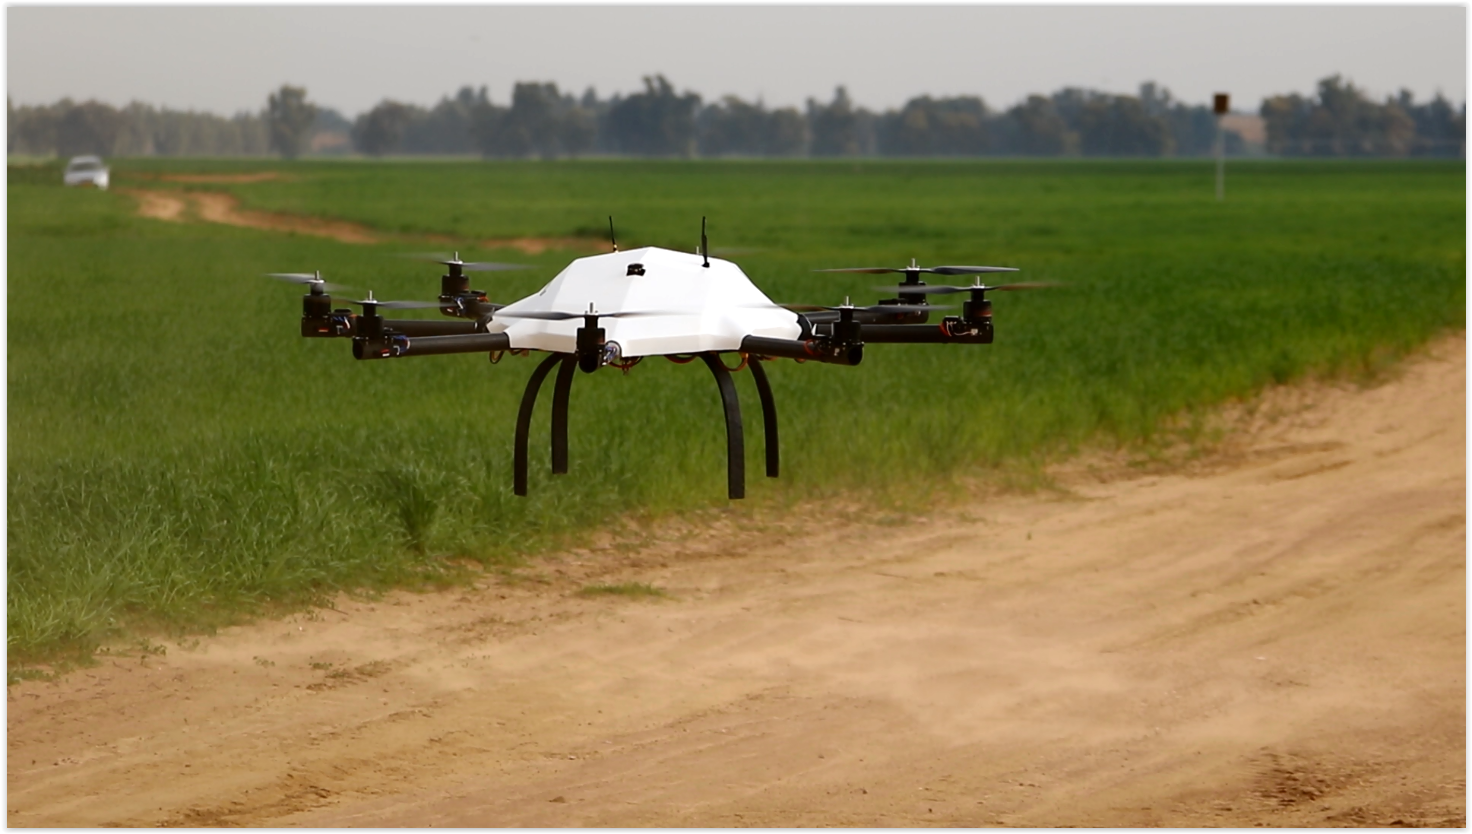 Le Pagasus 120, drones multi-rotor, sera exposé au salon du Bourget.